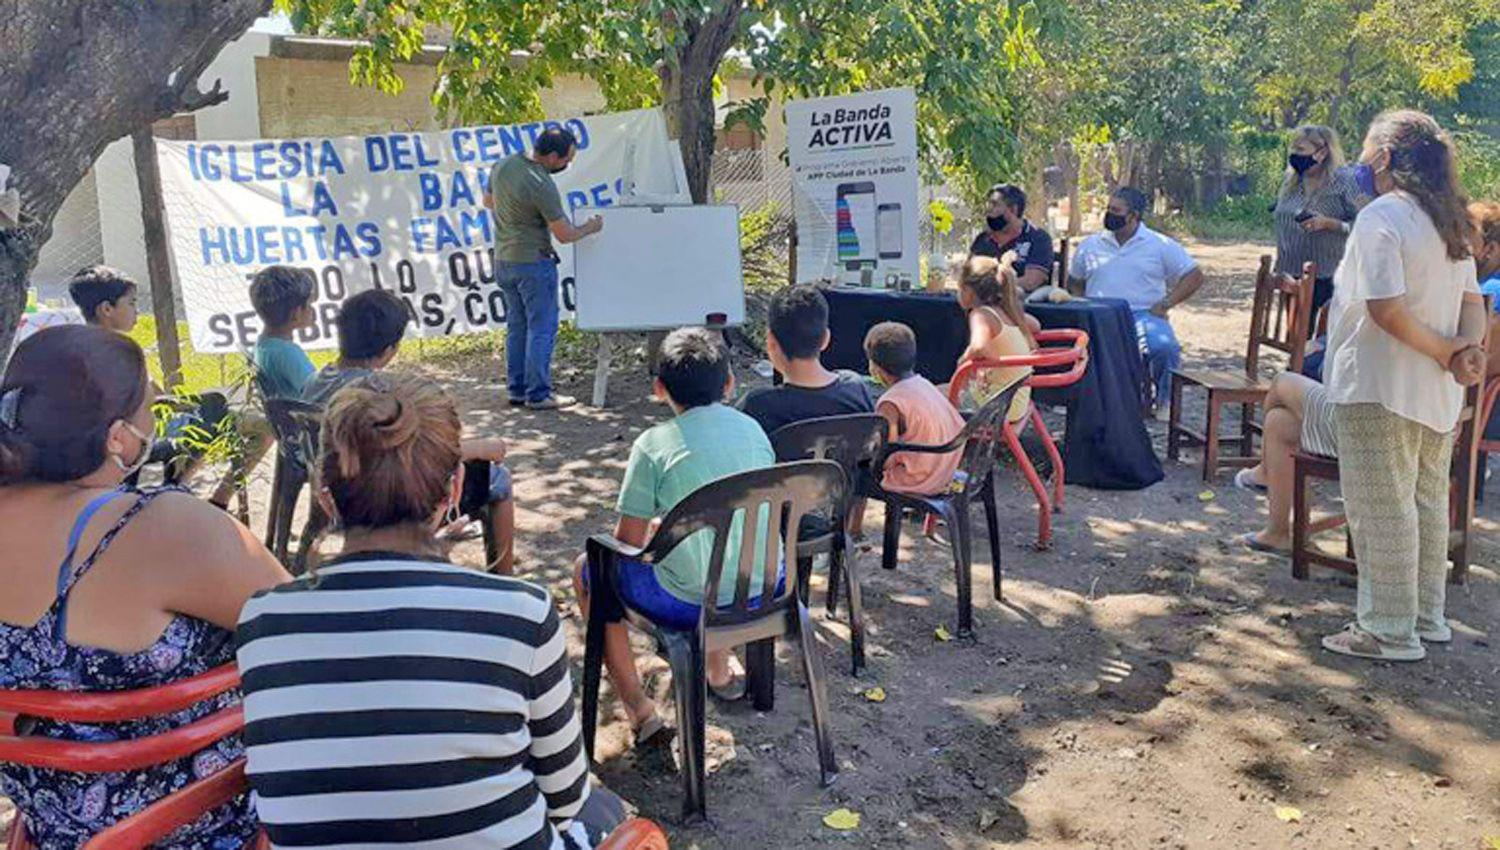 El municipio impulsa las huertas familiares con charlas informativas en los barrios